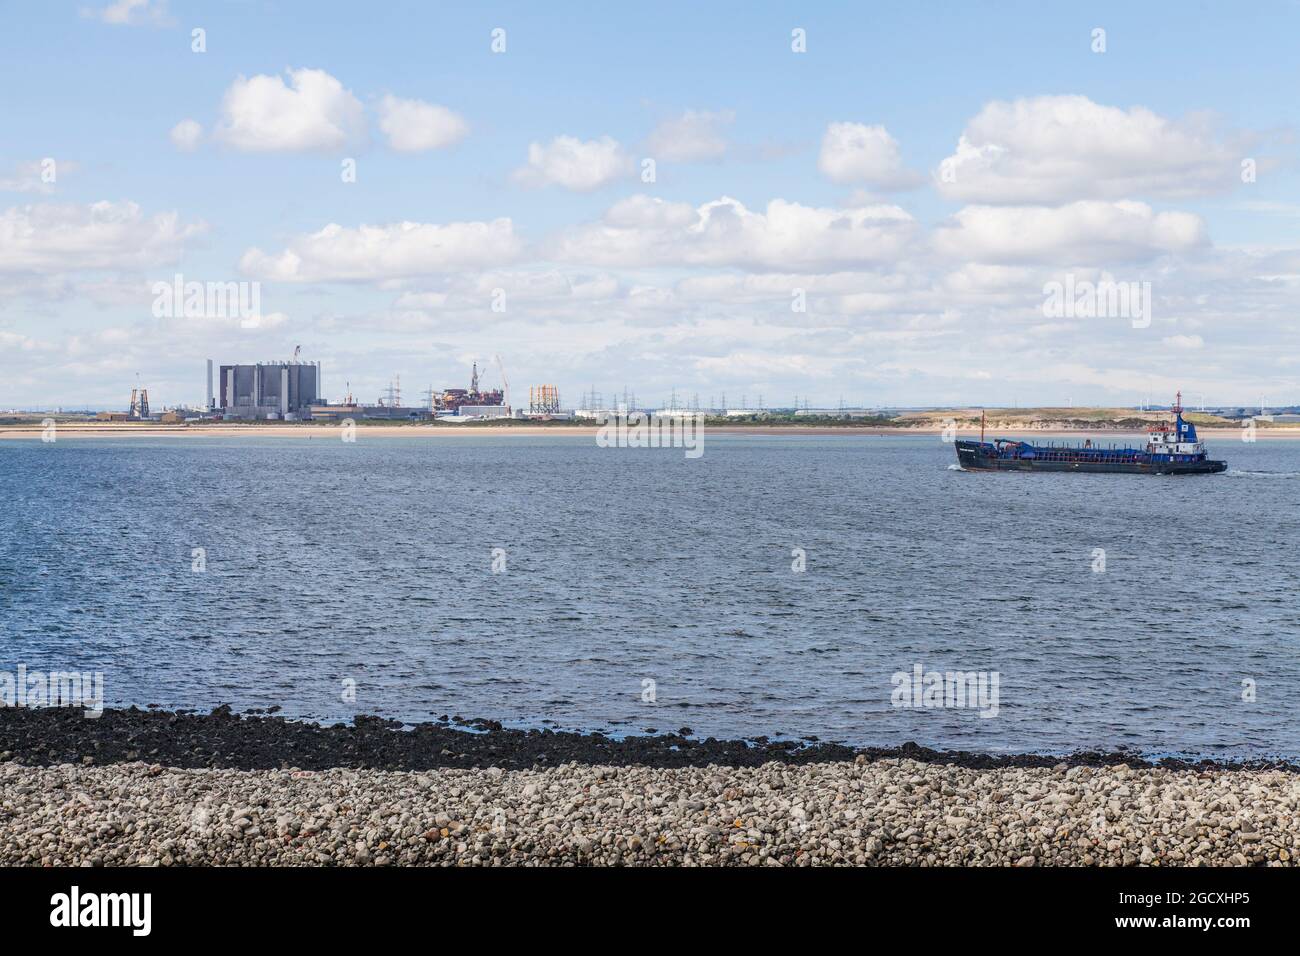 La centrale nucleare di Hartlepool e le piattaforme petrolifere decommissionate al porto di Seaton, viste dalla South Gare, Redcar, Inghilterra, UK.drager si avvicinano a Teesport Foto Stock